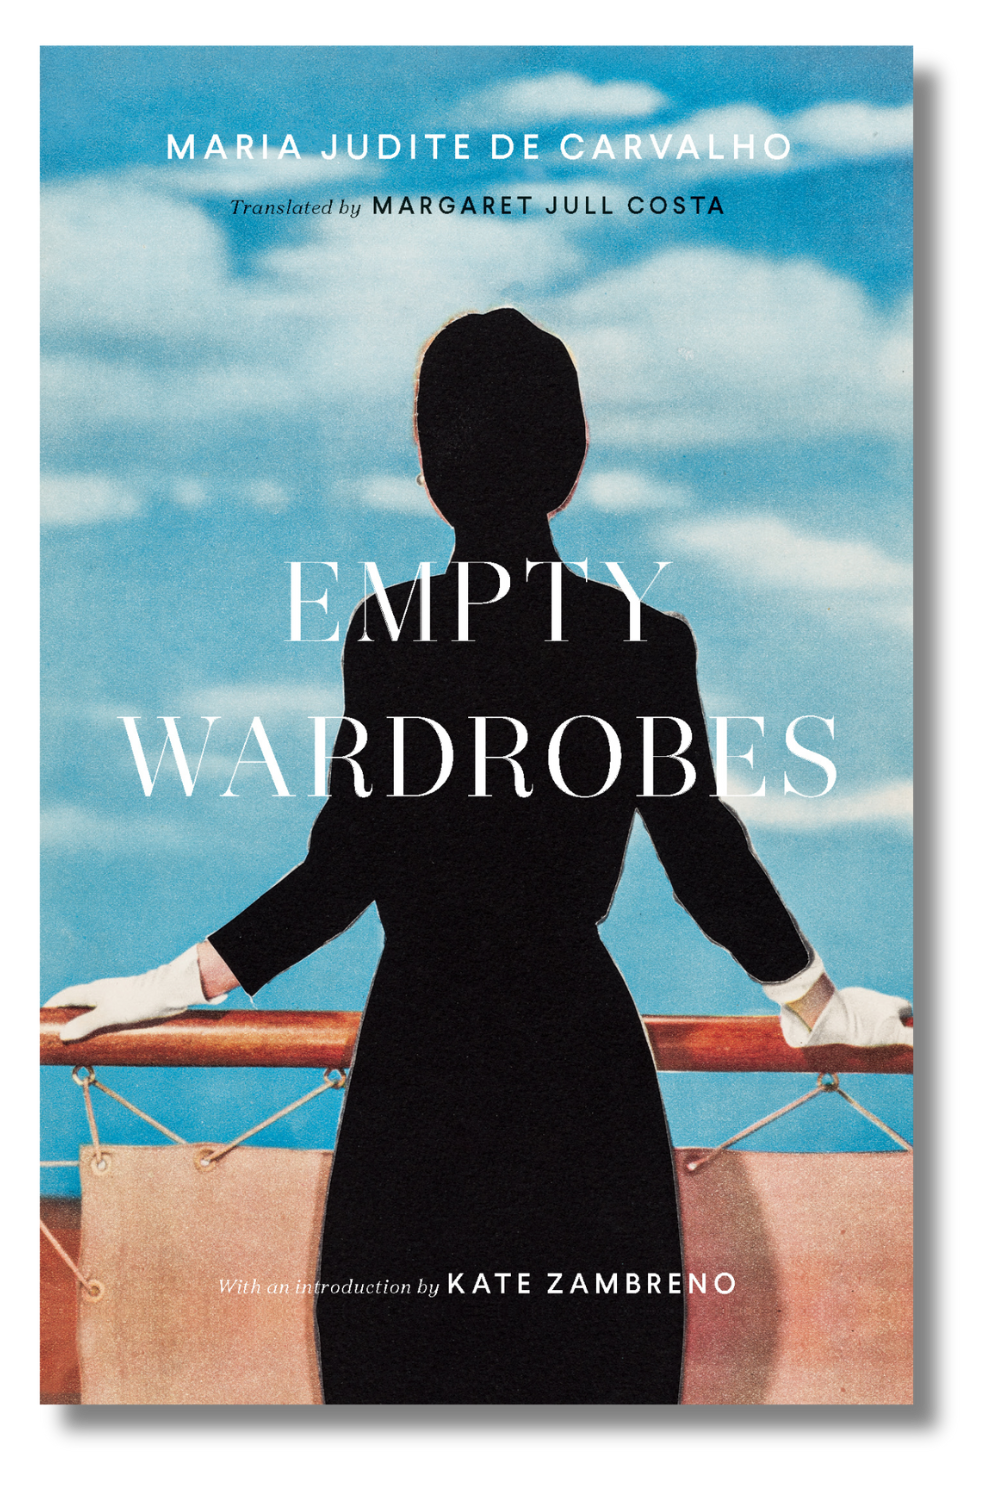 The cover of "Empty Wardrobes" by Maria Judite de Carvalho